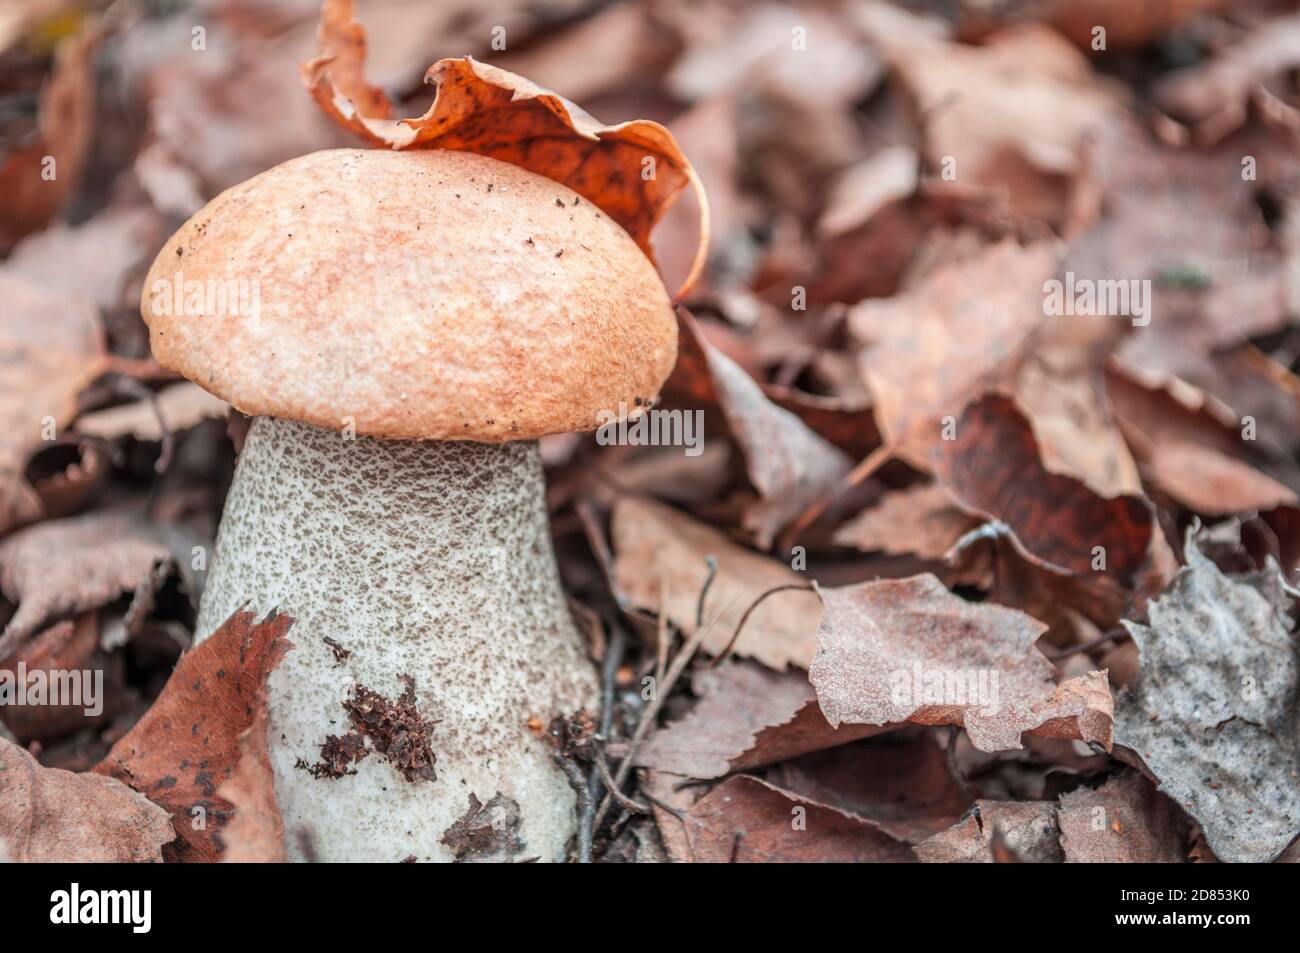 Un champignon de bouleau avec un capuchon orange dans un déchu feuille d'arbre sèche Banque D'Images